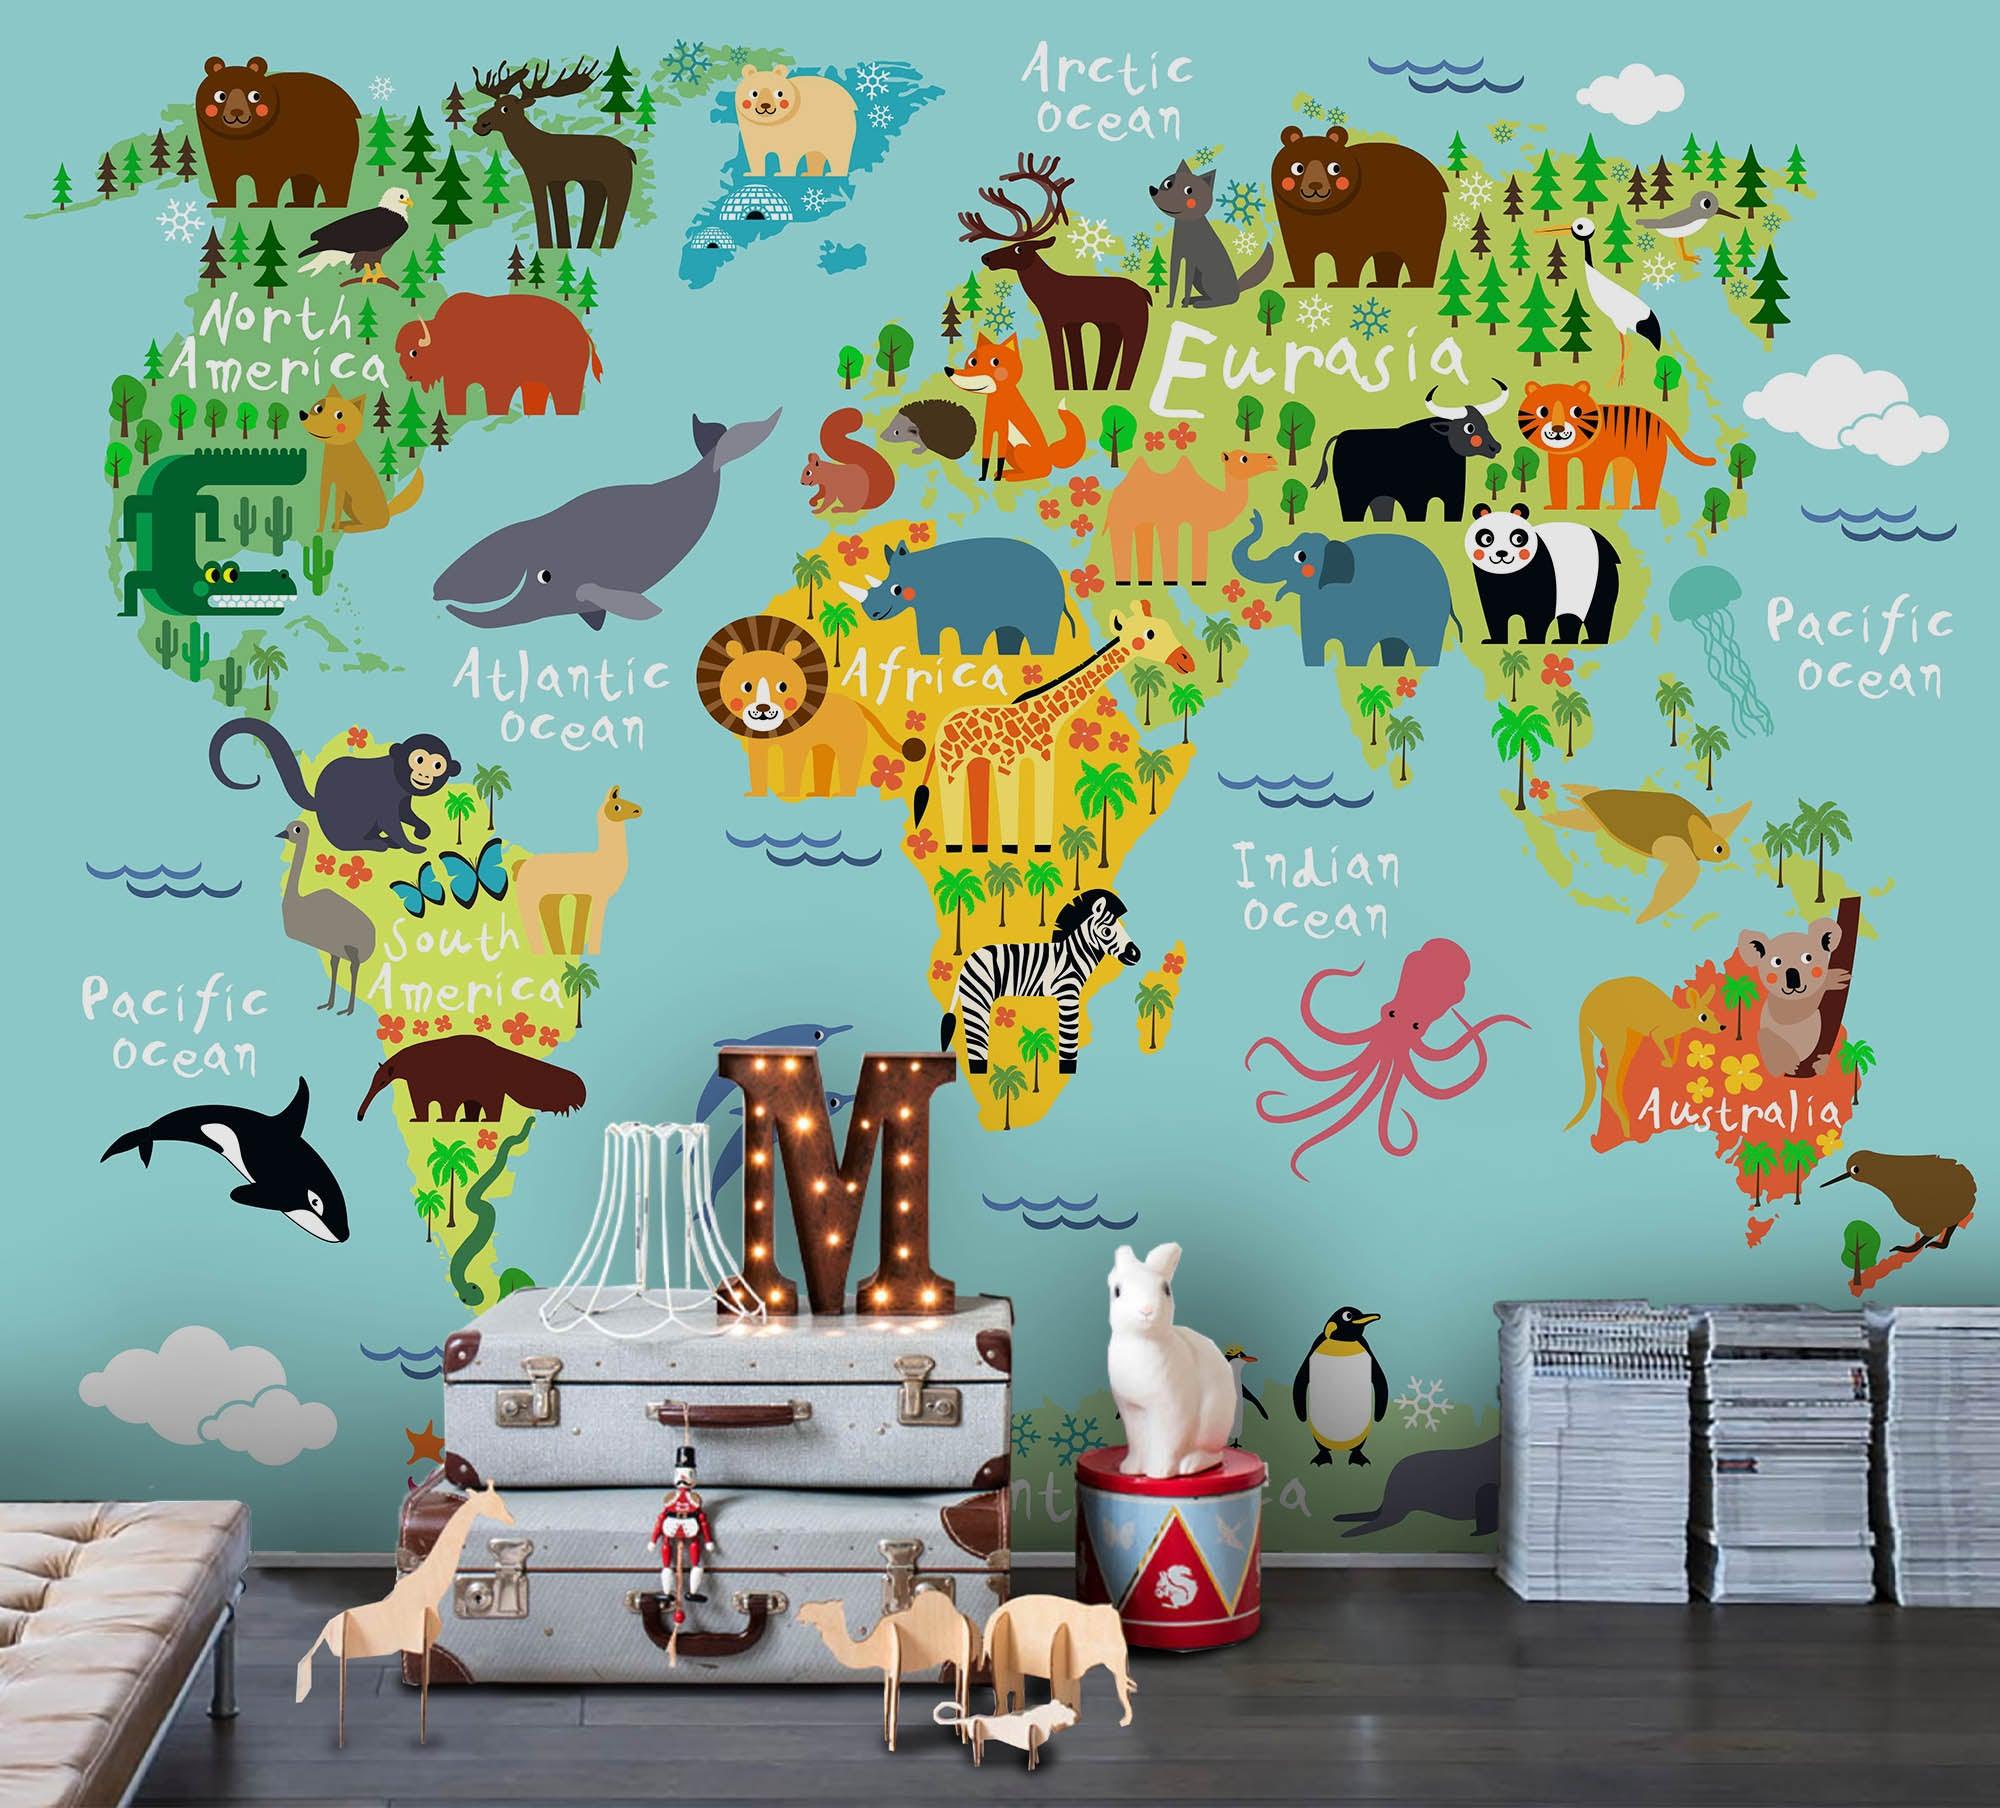 3D Green Animals World Map Wall Mural Wallpaper 33- Jess Art Decoration